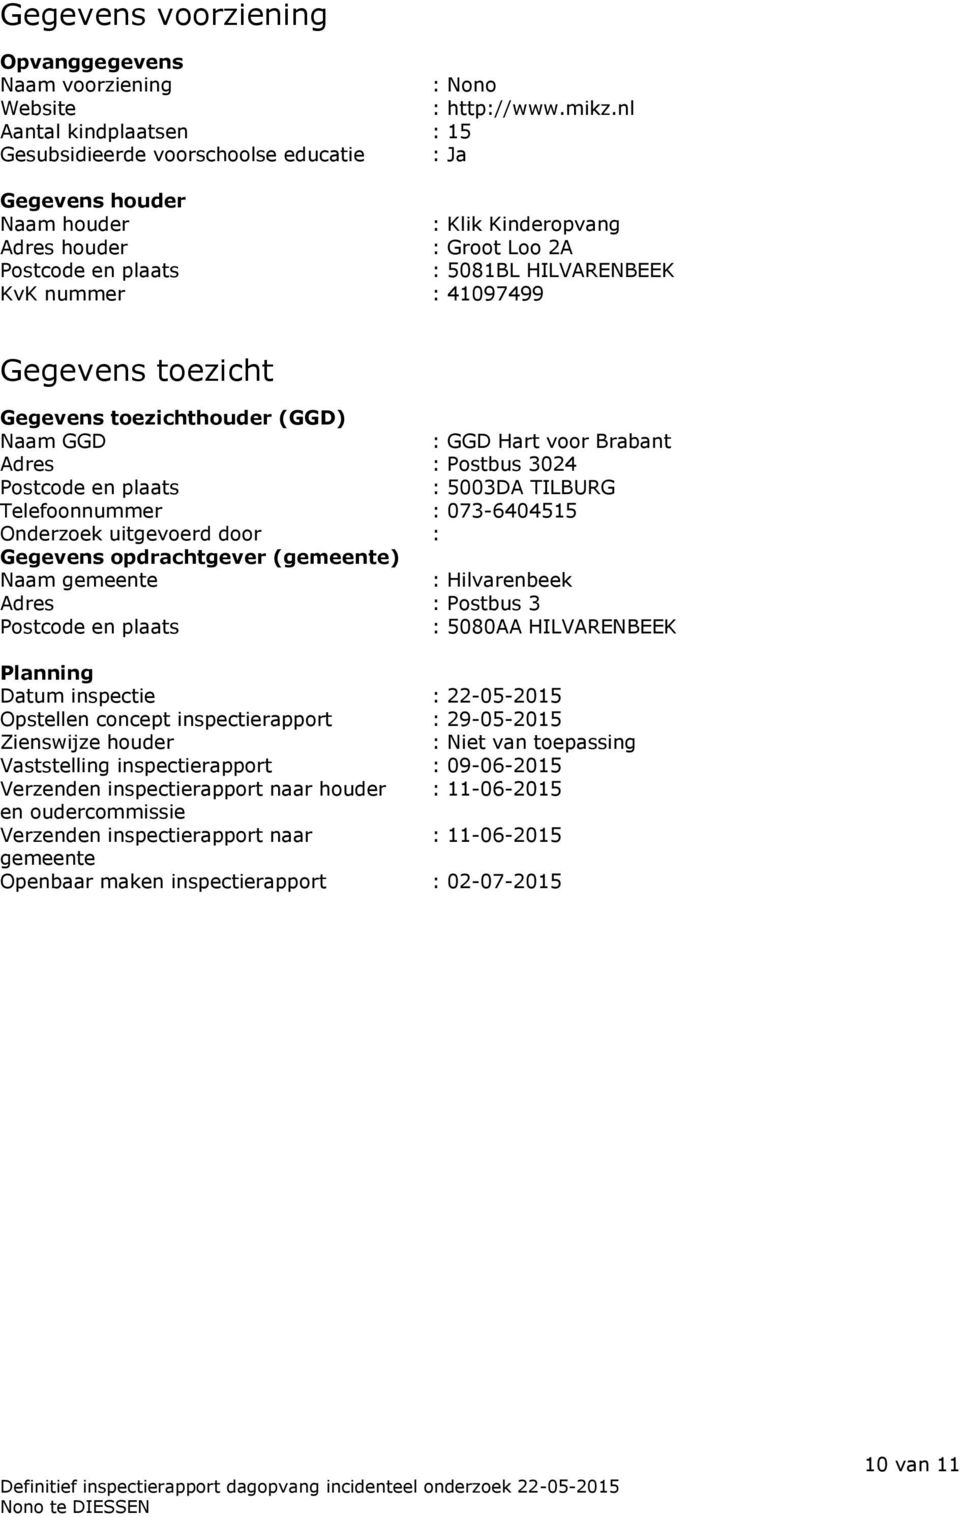 41097499 Gegevens toezicht Gegevens toezichthouder (GGD) Naam GGD : GGD Hart voor Brabant Adres : Postbus 3024 Postcode en plaats : 5003DA TILBURG Telefoonnummer : 073-6404515 Onderzoek uitgevoerd